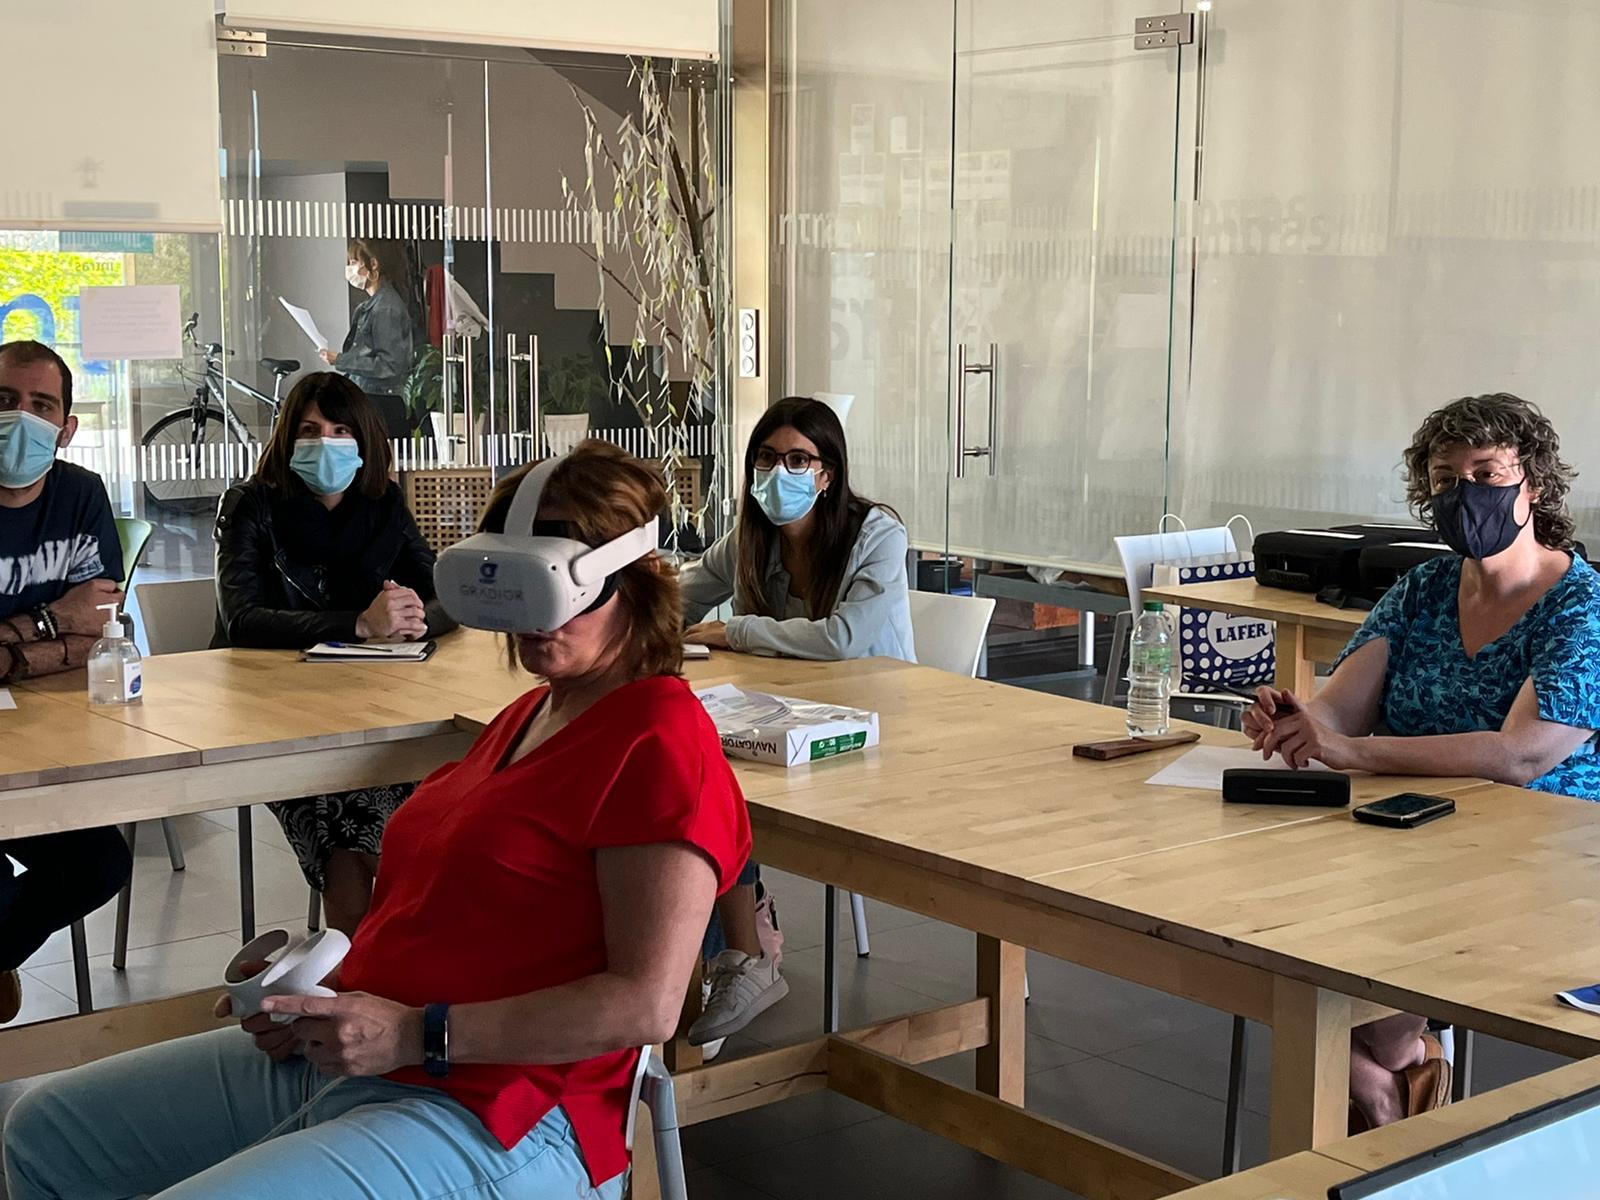 la imagen fue tomada en la reunión con cuidados paliativos, en donde cinco personas reunidas en una sala, en primer plano, una señora usando gafas de Realidad Virtual, al fondeo, cuatro personas con mascarilla viendo lo que sucede